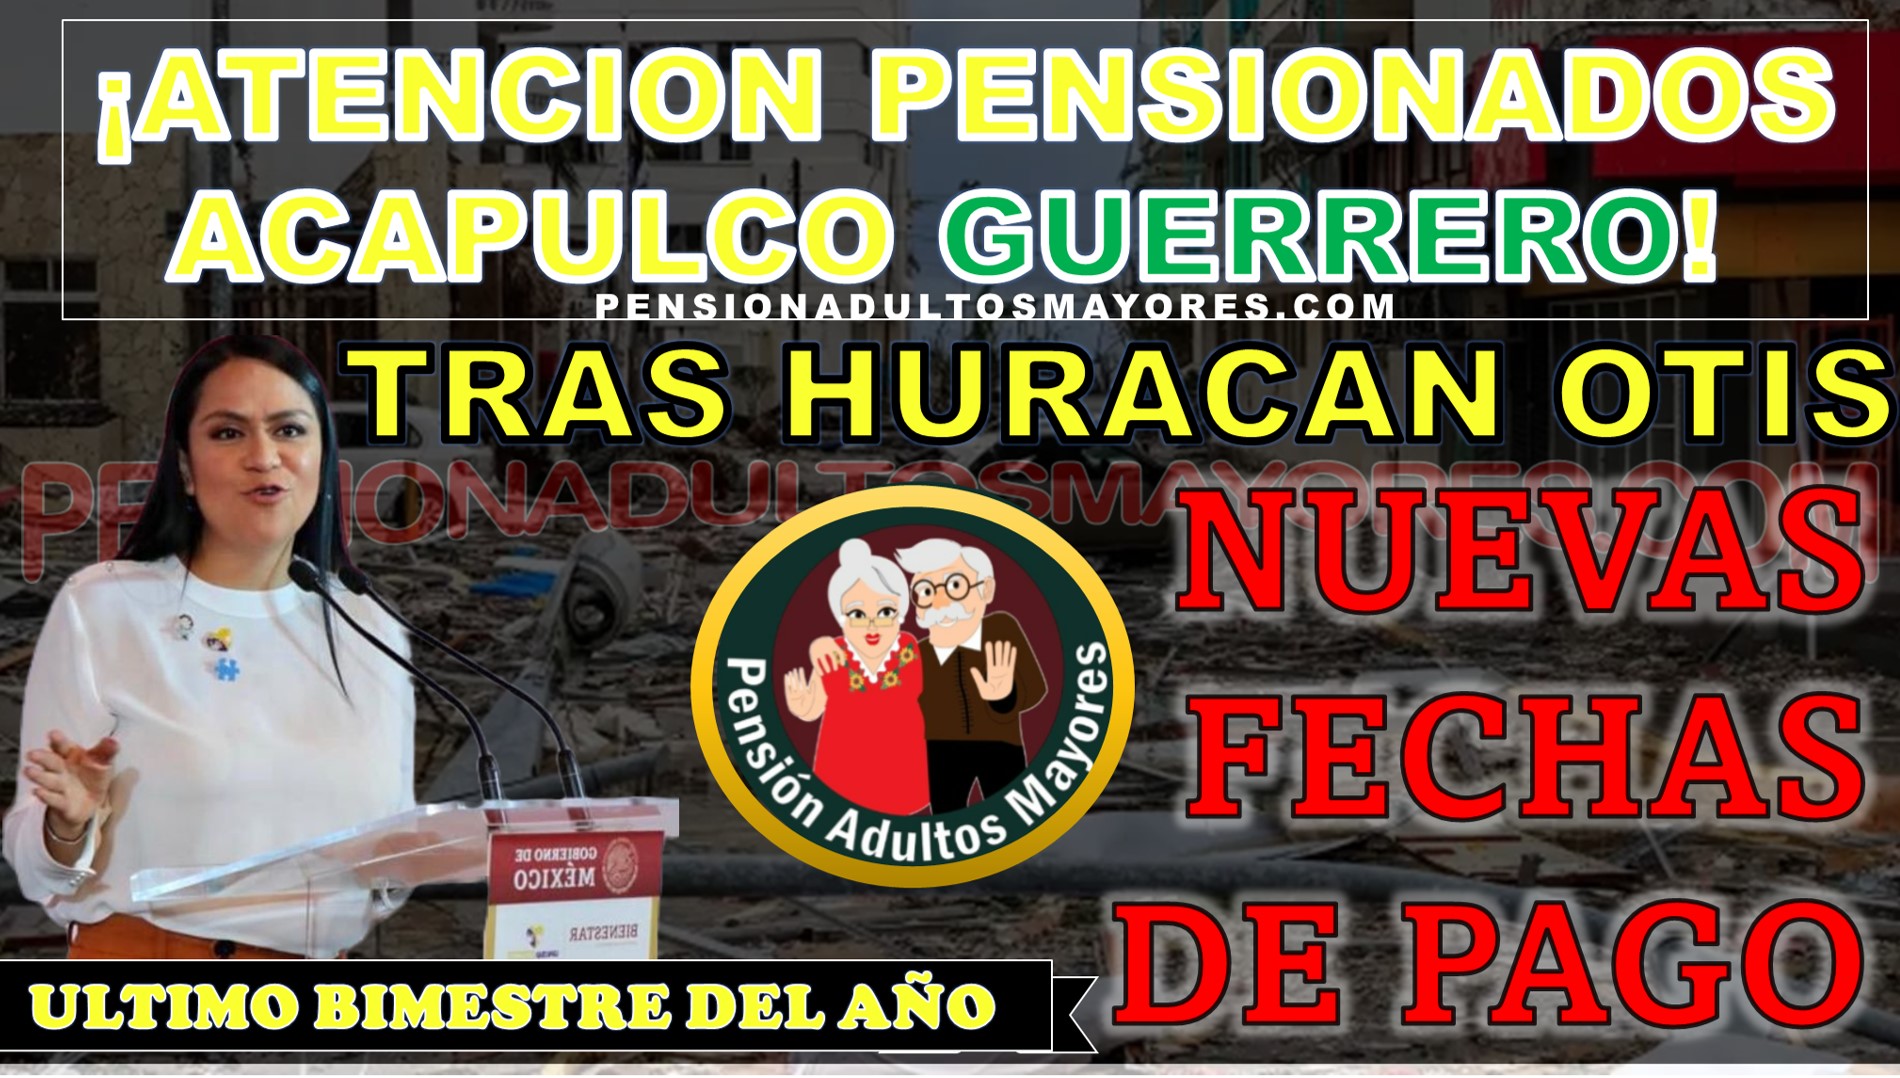 ¡ATENCIÓN PENSIONADOS DE ACAPULCO GUERRERO! Nuevo plazo para cobro de pensión Adultos mayores tras el huracán OTIS